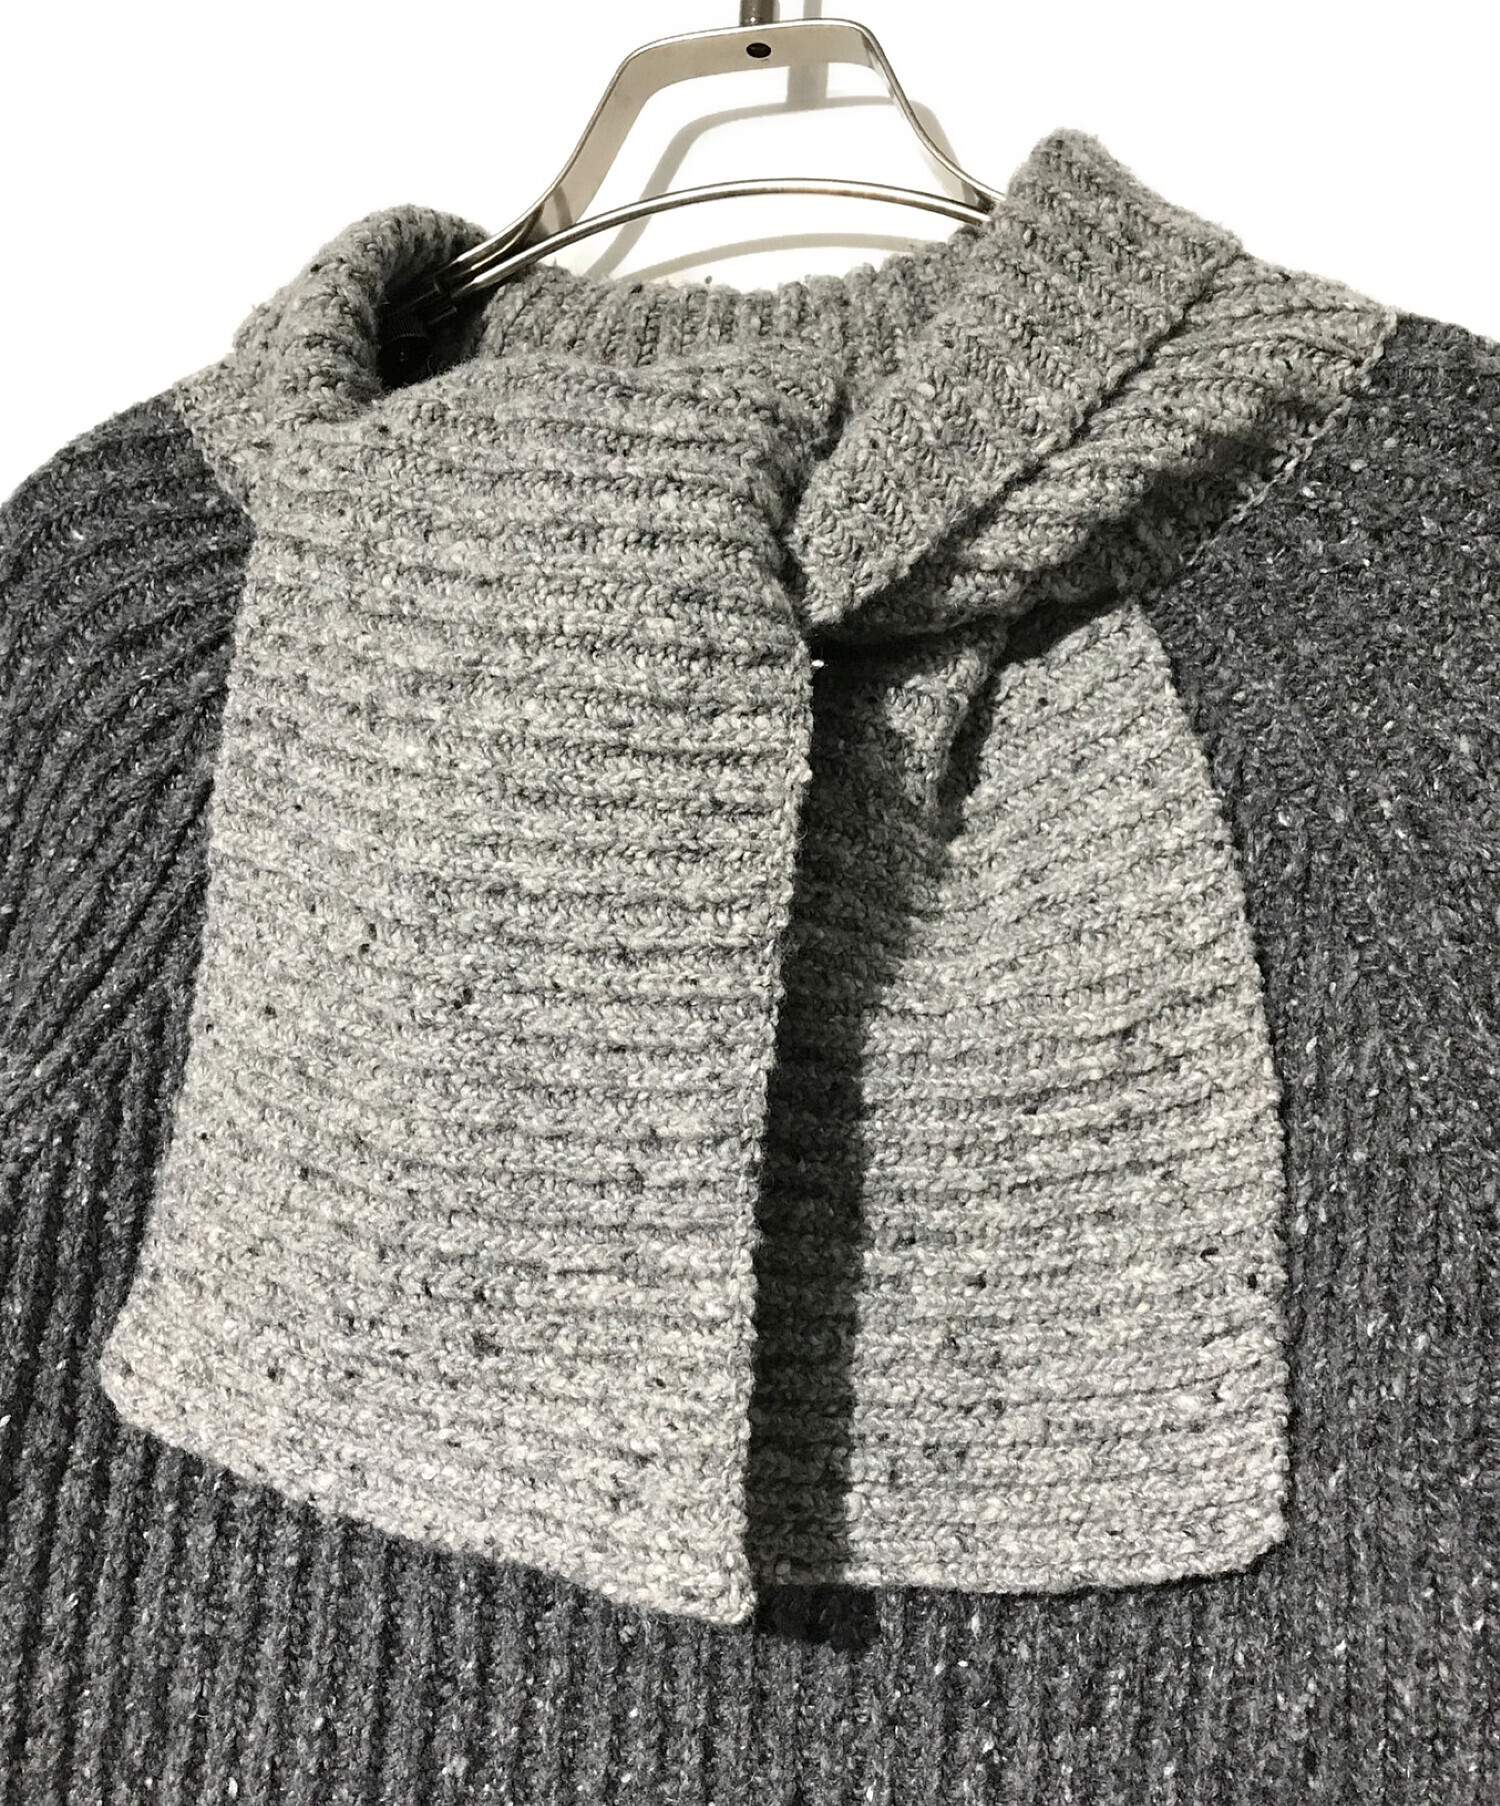 中古・古着通販】LOEWE (ロエベ) Wool Scarf Sweater グレー サイズ:M